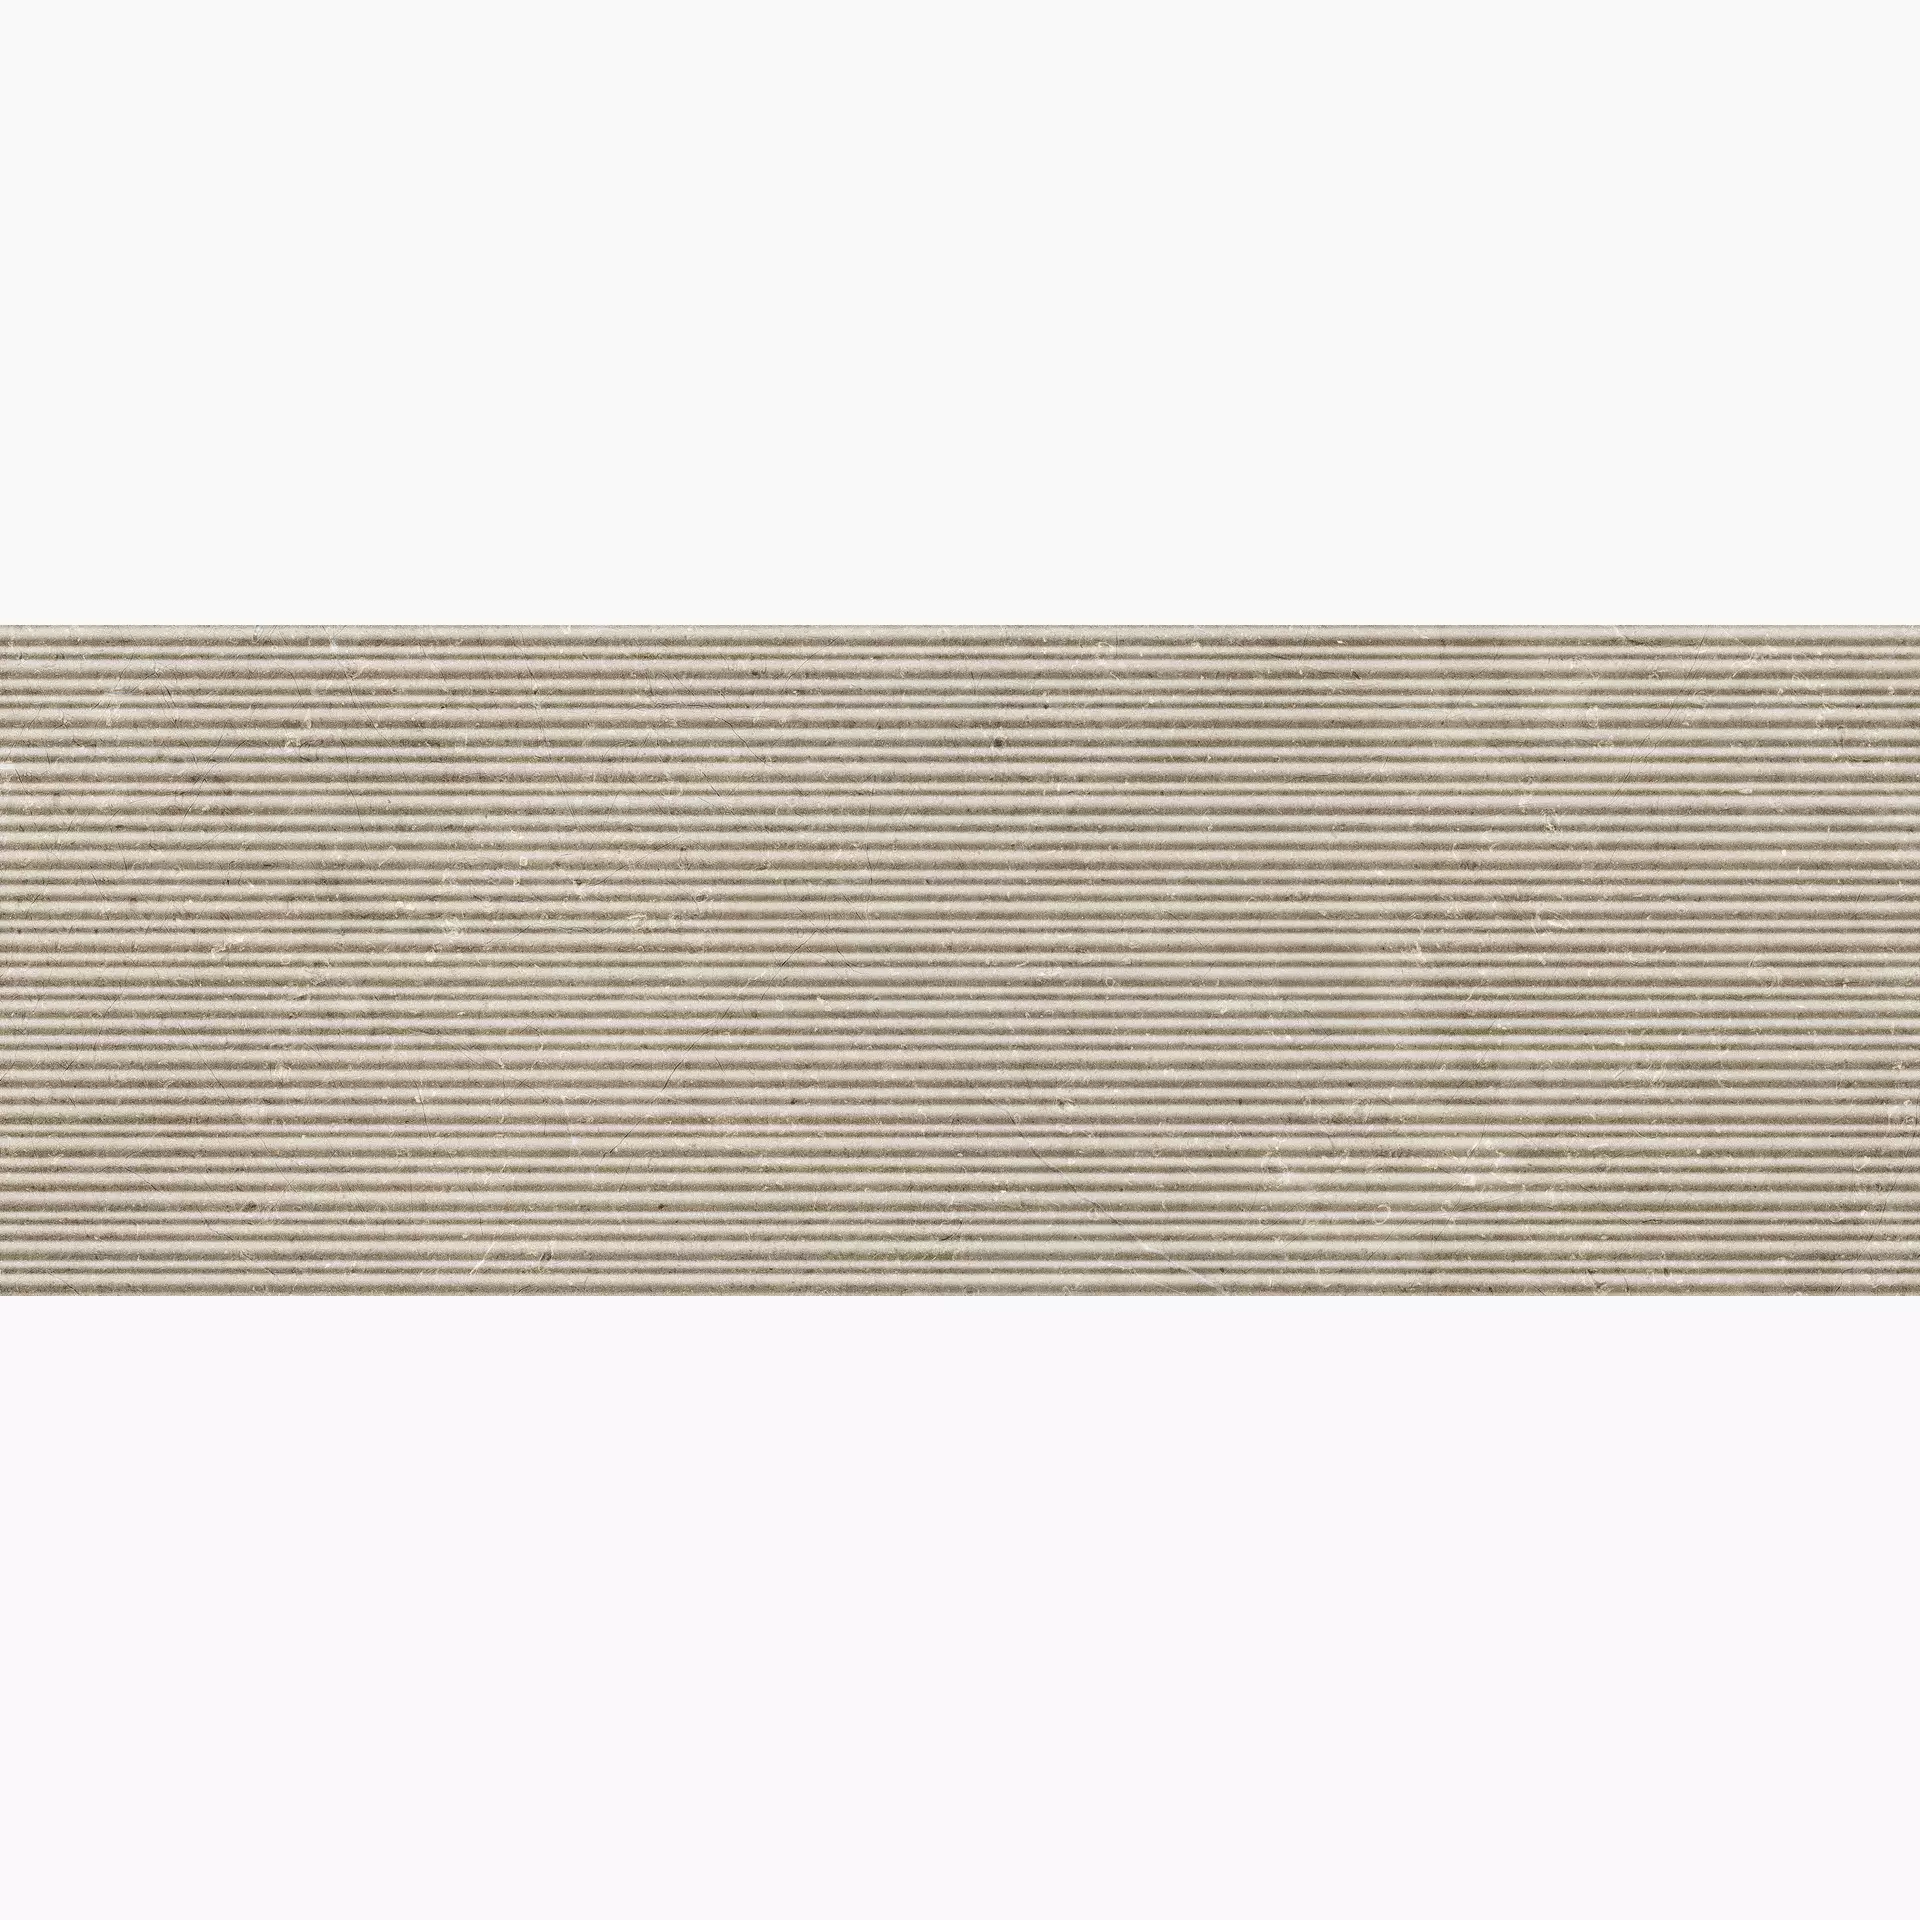 Wandfliese Marazzi Limestone Wall Taupe Struttura Taupe MFCK struktur 40x120cm Mikado 3D rektifiziert 8mm